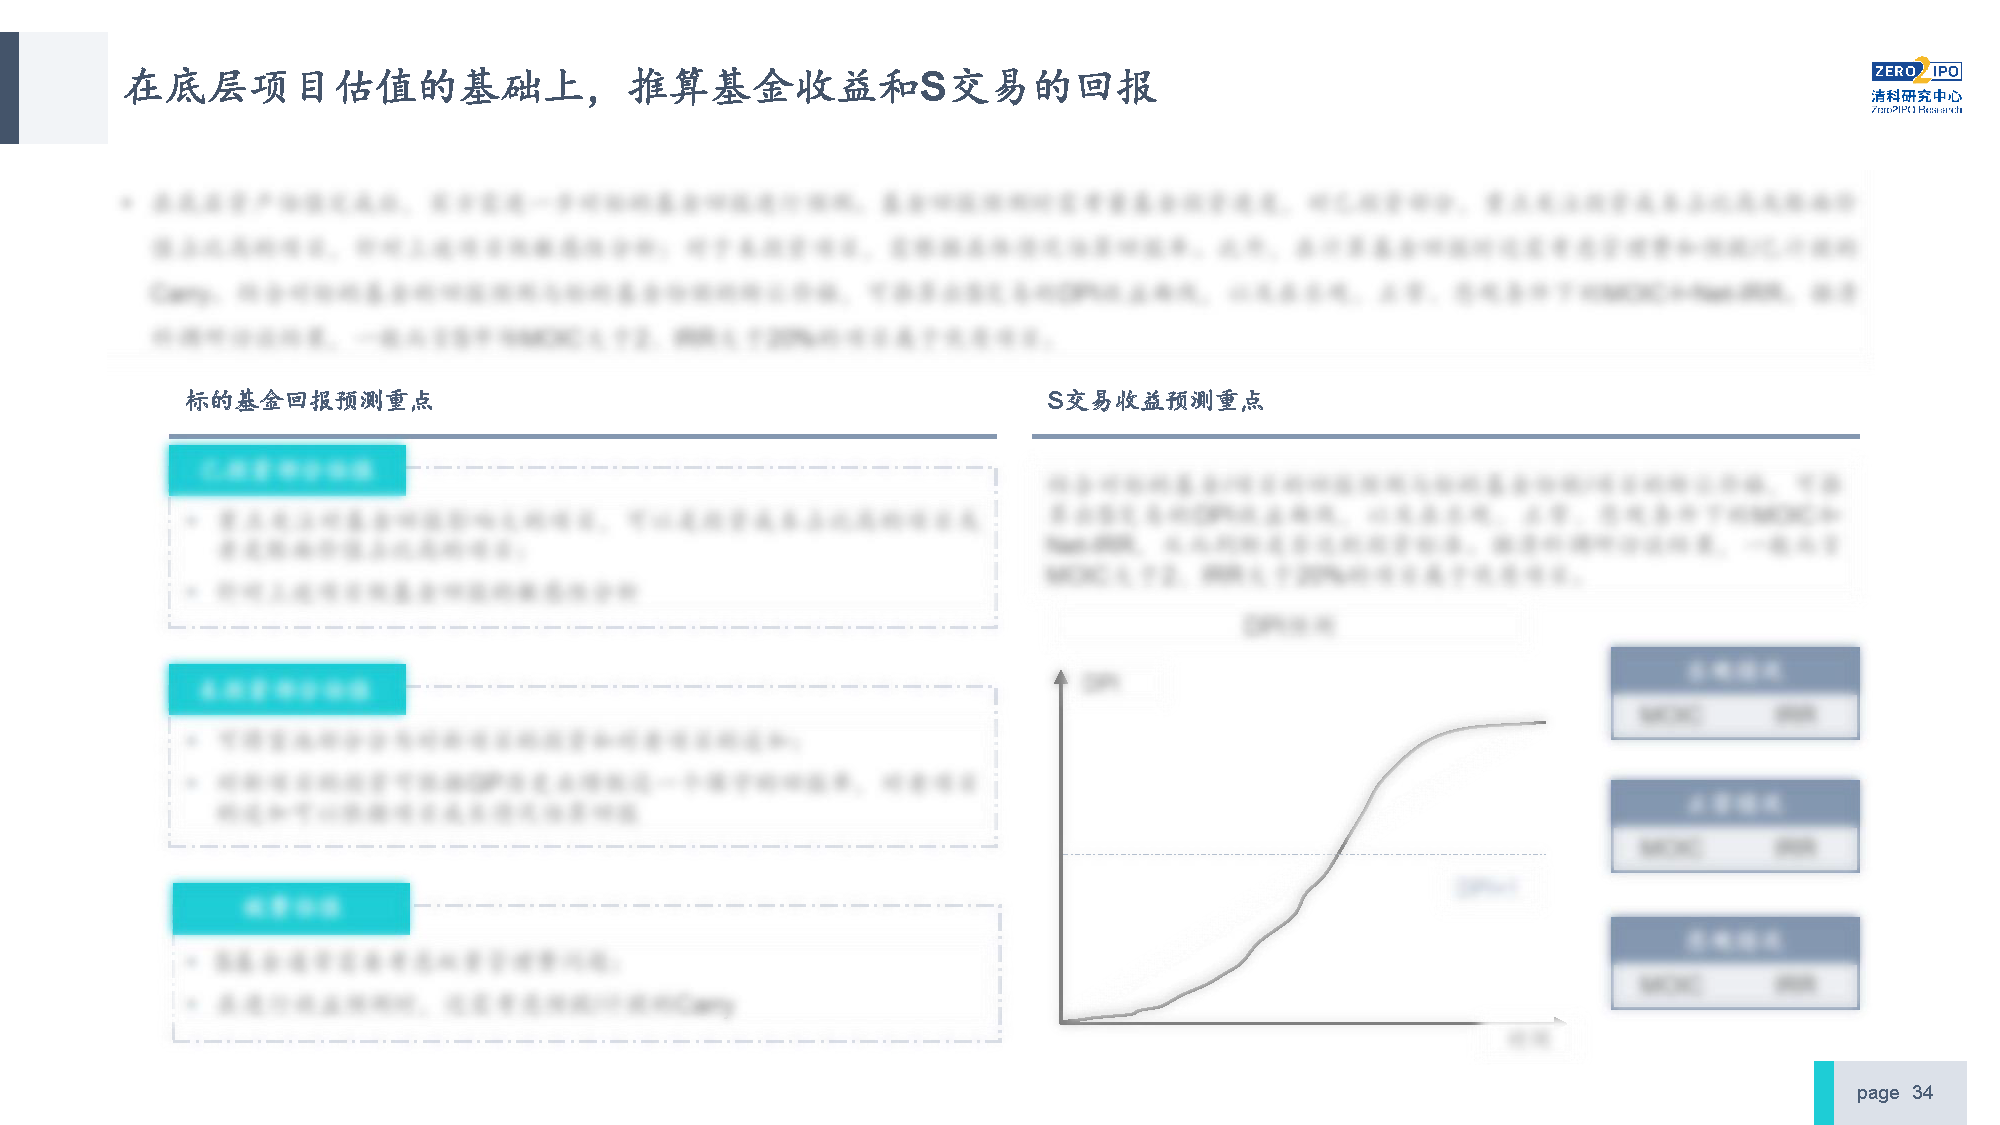 【发布版】2022年中国私募股权S交易研究报告_页面_34.png